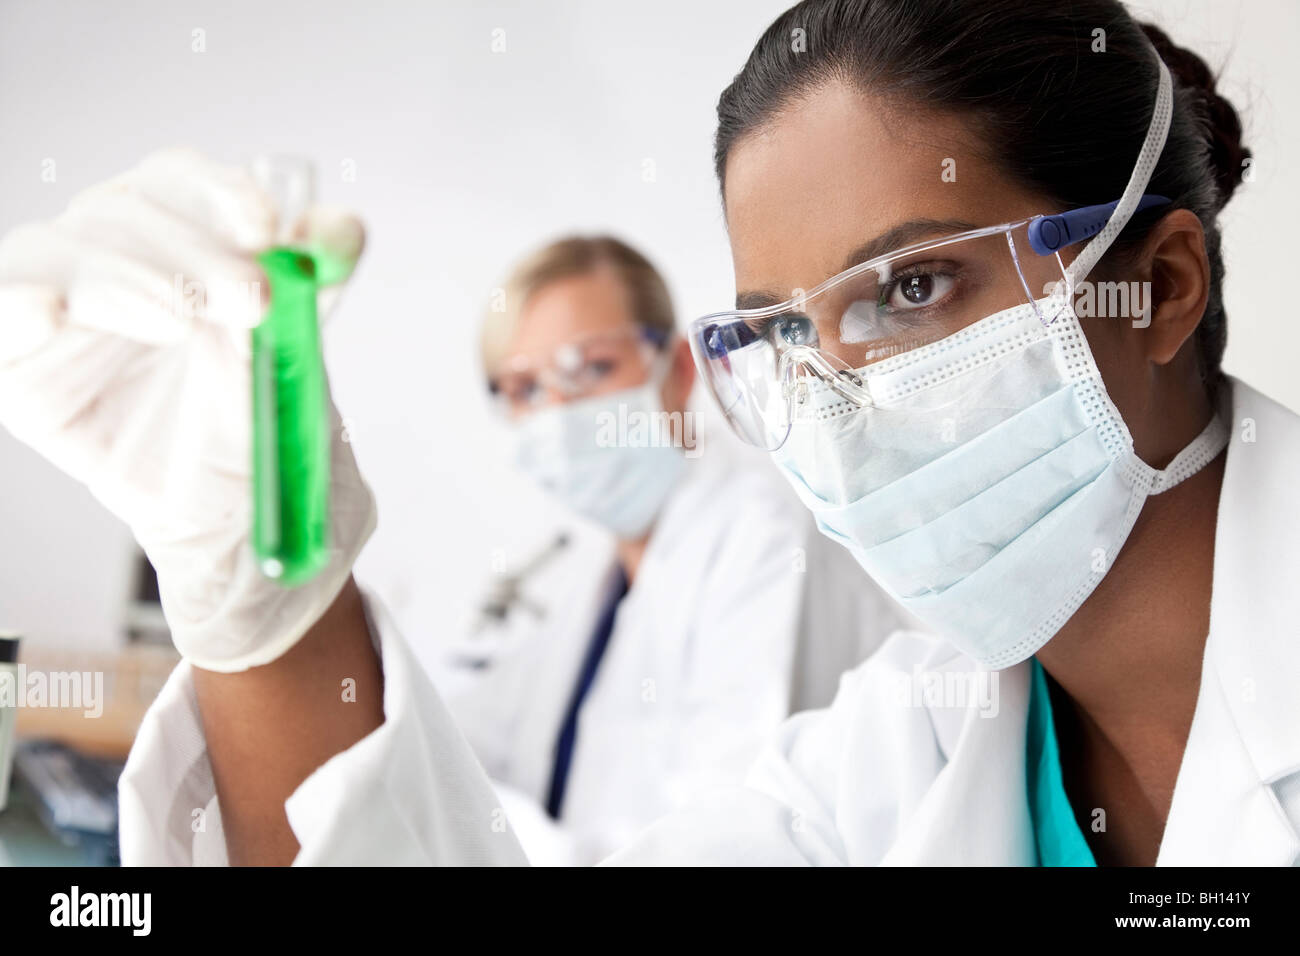 Weibliche asiatische medizinische oder wissenschaftliche Forscher oder Arzt Blick auf ein Reagenzglas eine grüne Lösung in einem Labor Stockfoto